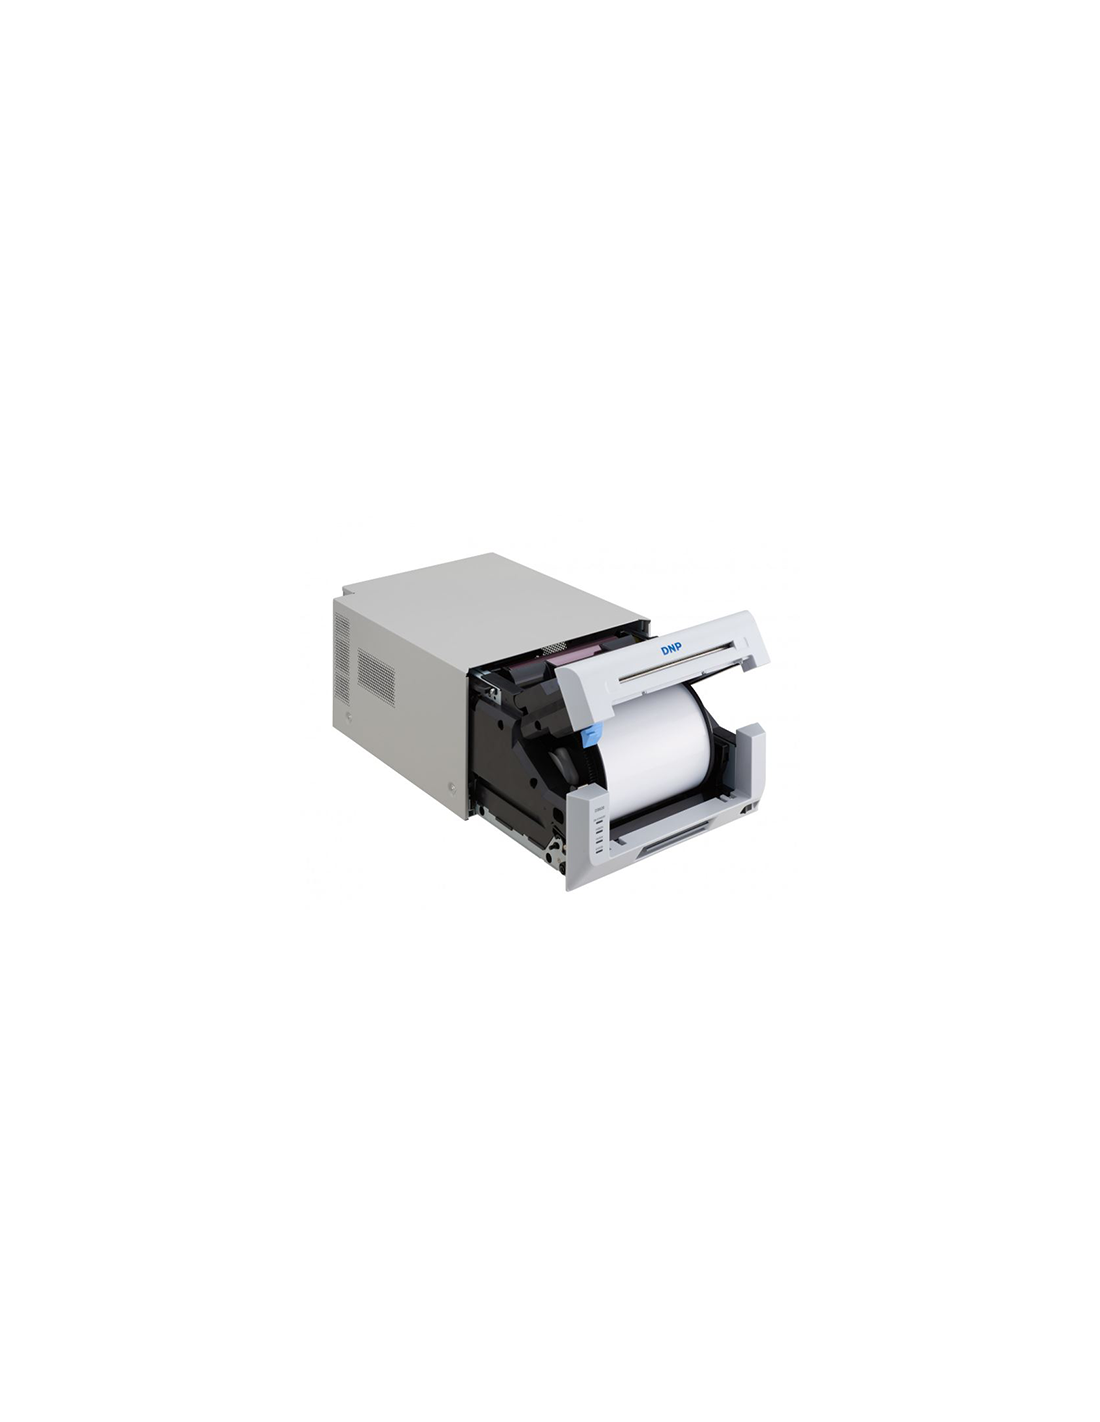 Kit imprimante thermique DNP DS620 + consommable 15x20 (400